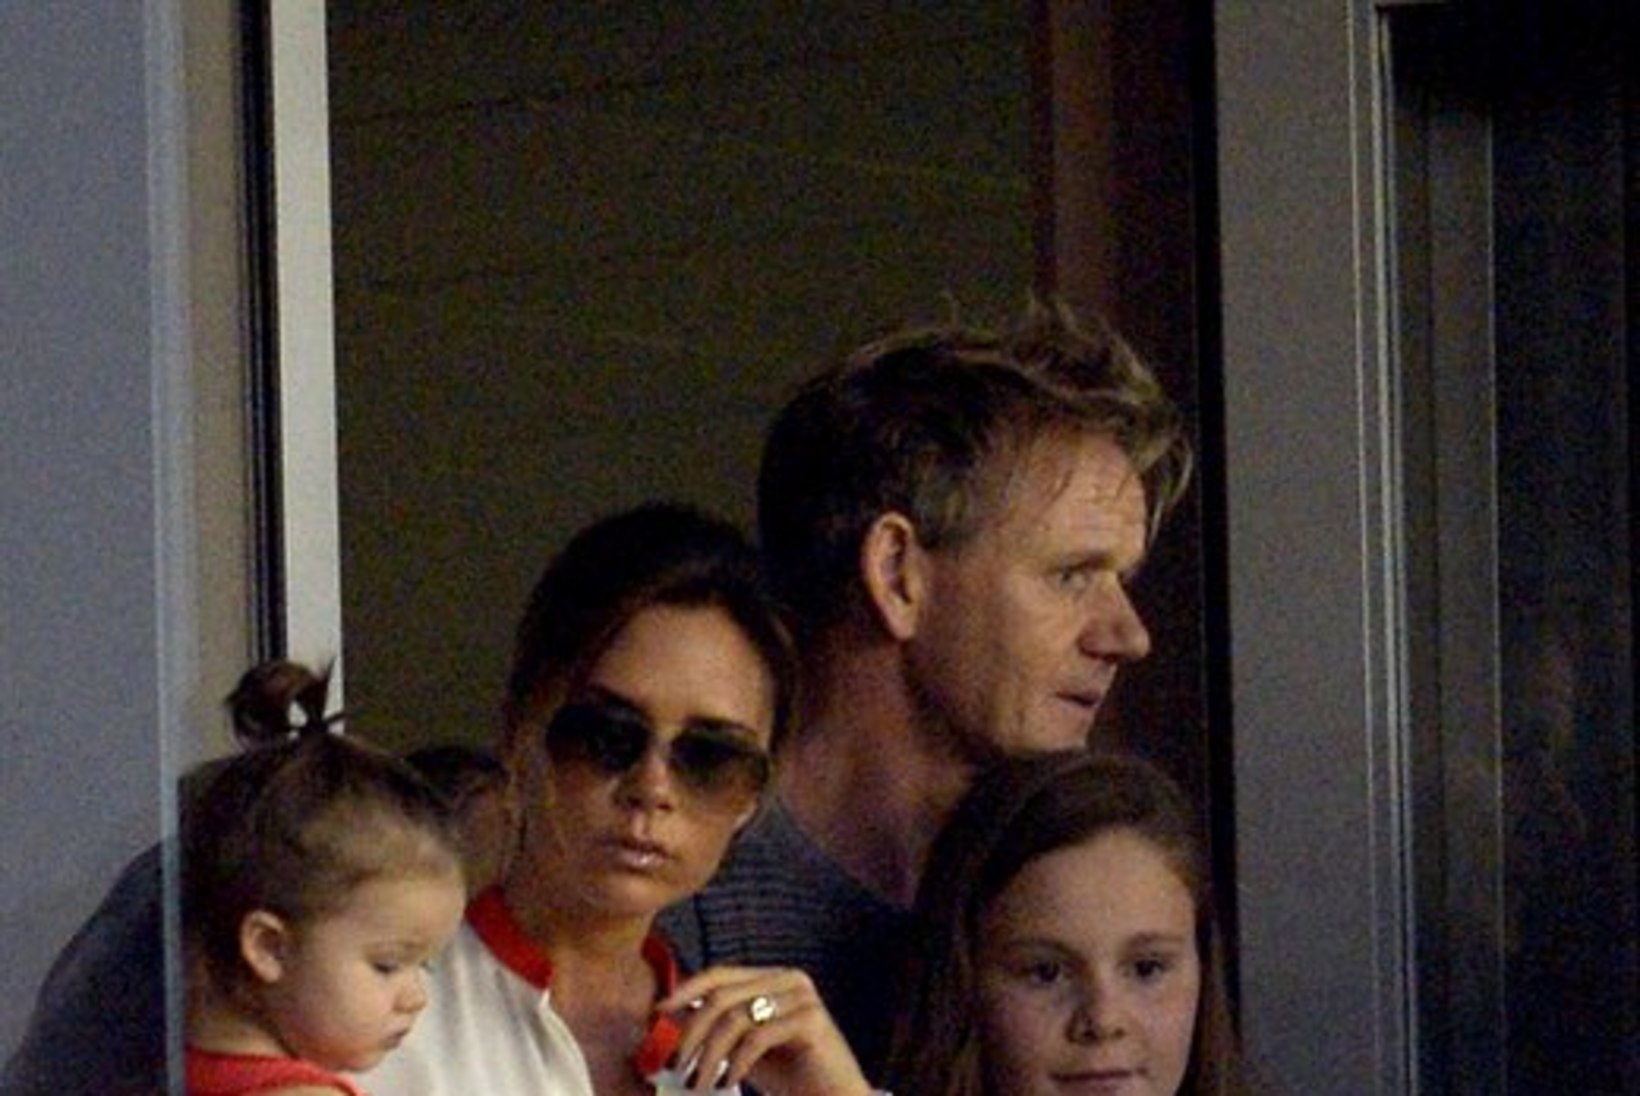 Briti vanemad jäljendavad innukalt Suri Cruise'i ja Harper Beckhamit